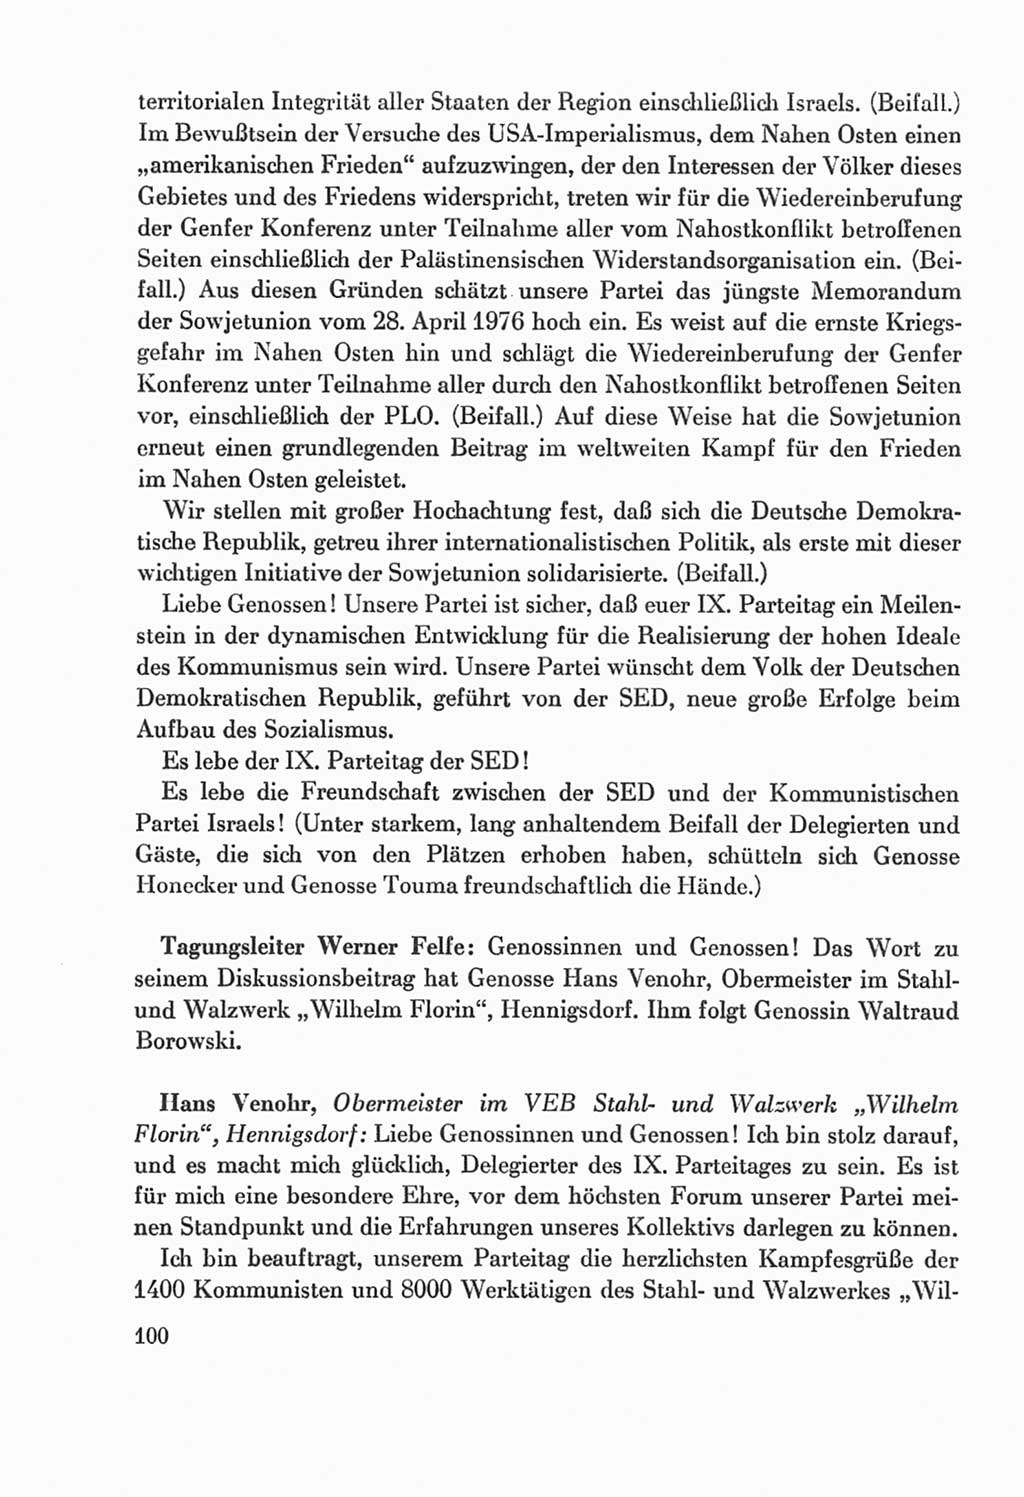 Protokoll der Verhandlungen des Ⅸ. Parteitages der Sozialistischen Einheitspartei Deutschlands (SED) [Deutsche Demokratische Republik (DDR)] 1976, Band 2, Seite 100 (Prot. Verh. Ⅸ. PT SED DDR 1976, Bd. 2, S. 100)